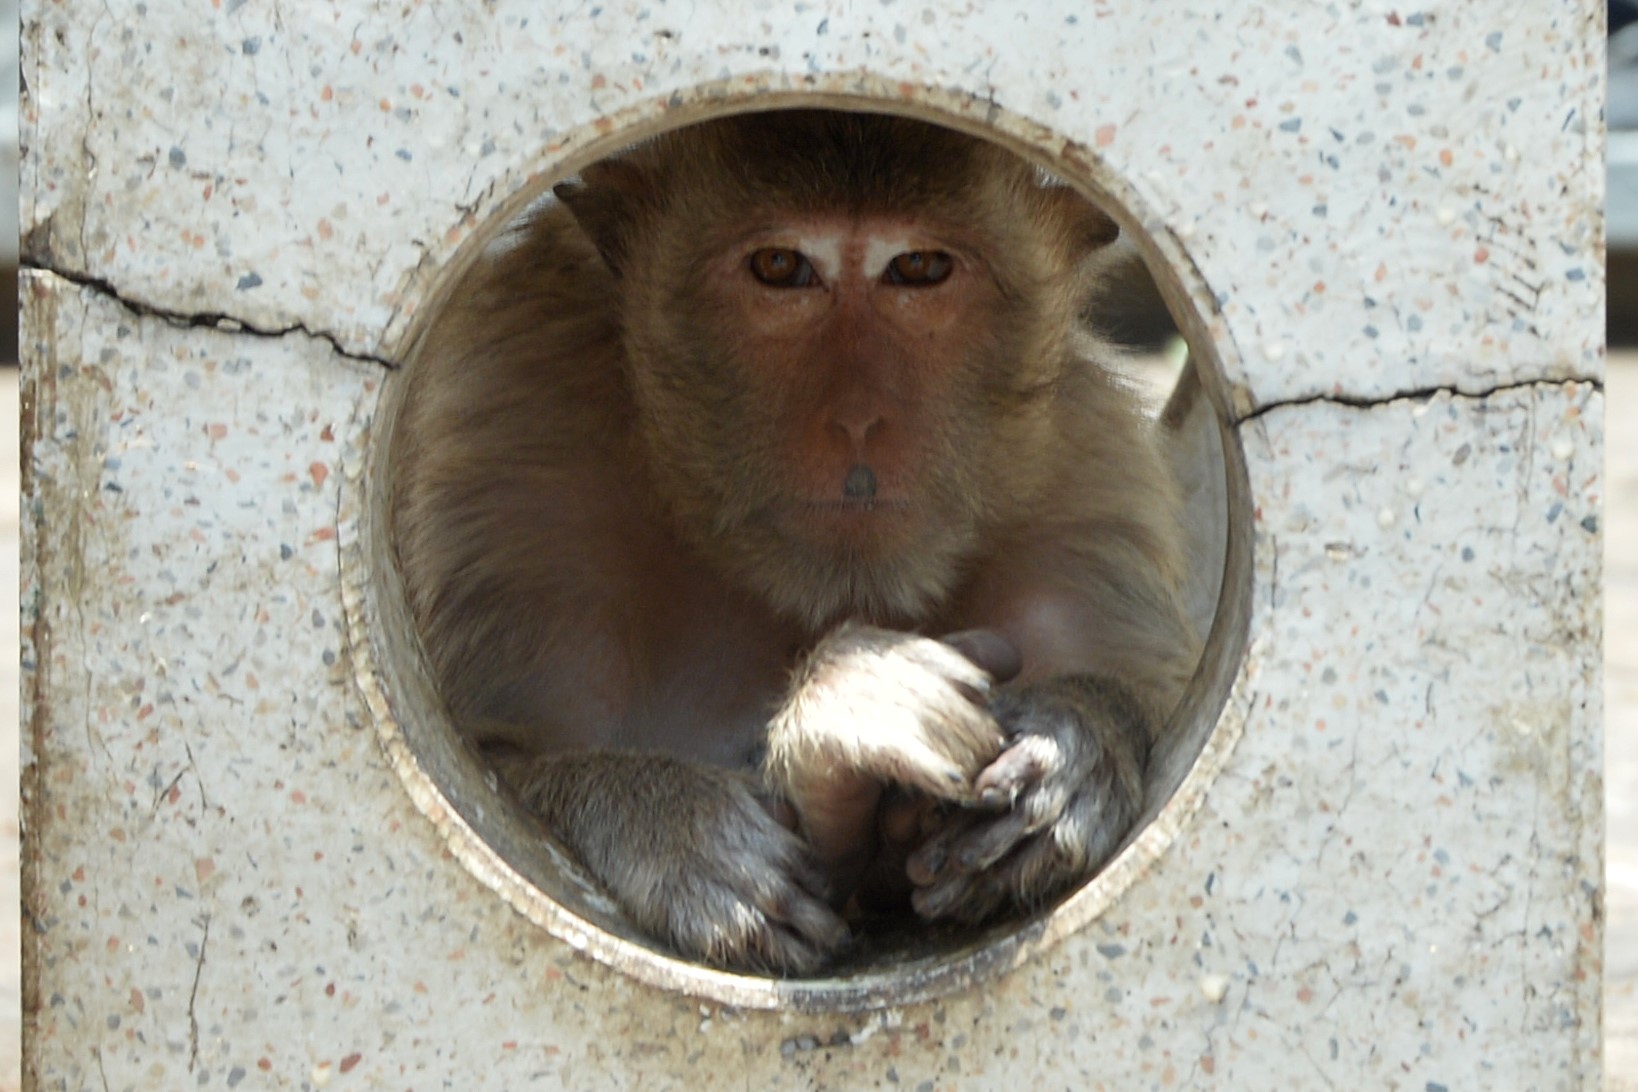 تھائی لینڈ کے لوپ بوری میں بندر جنگلے پر بیٹھے ہوئے ہیں۔(شِنہوا)